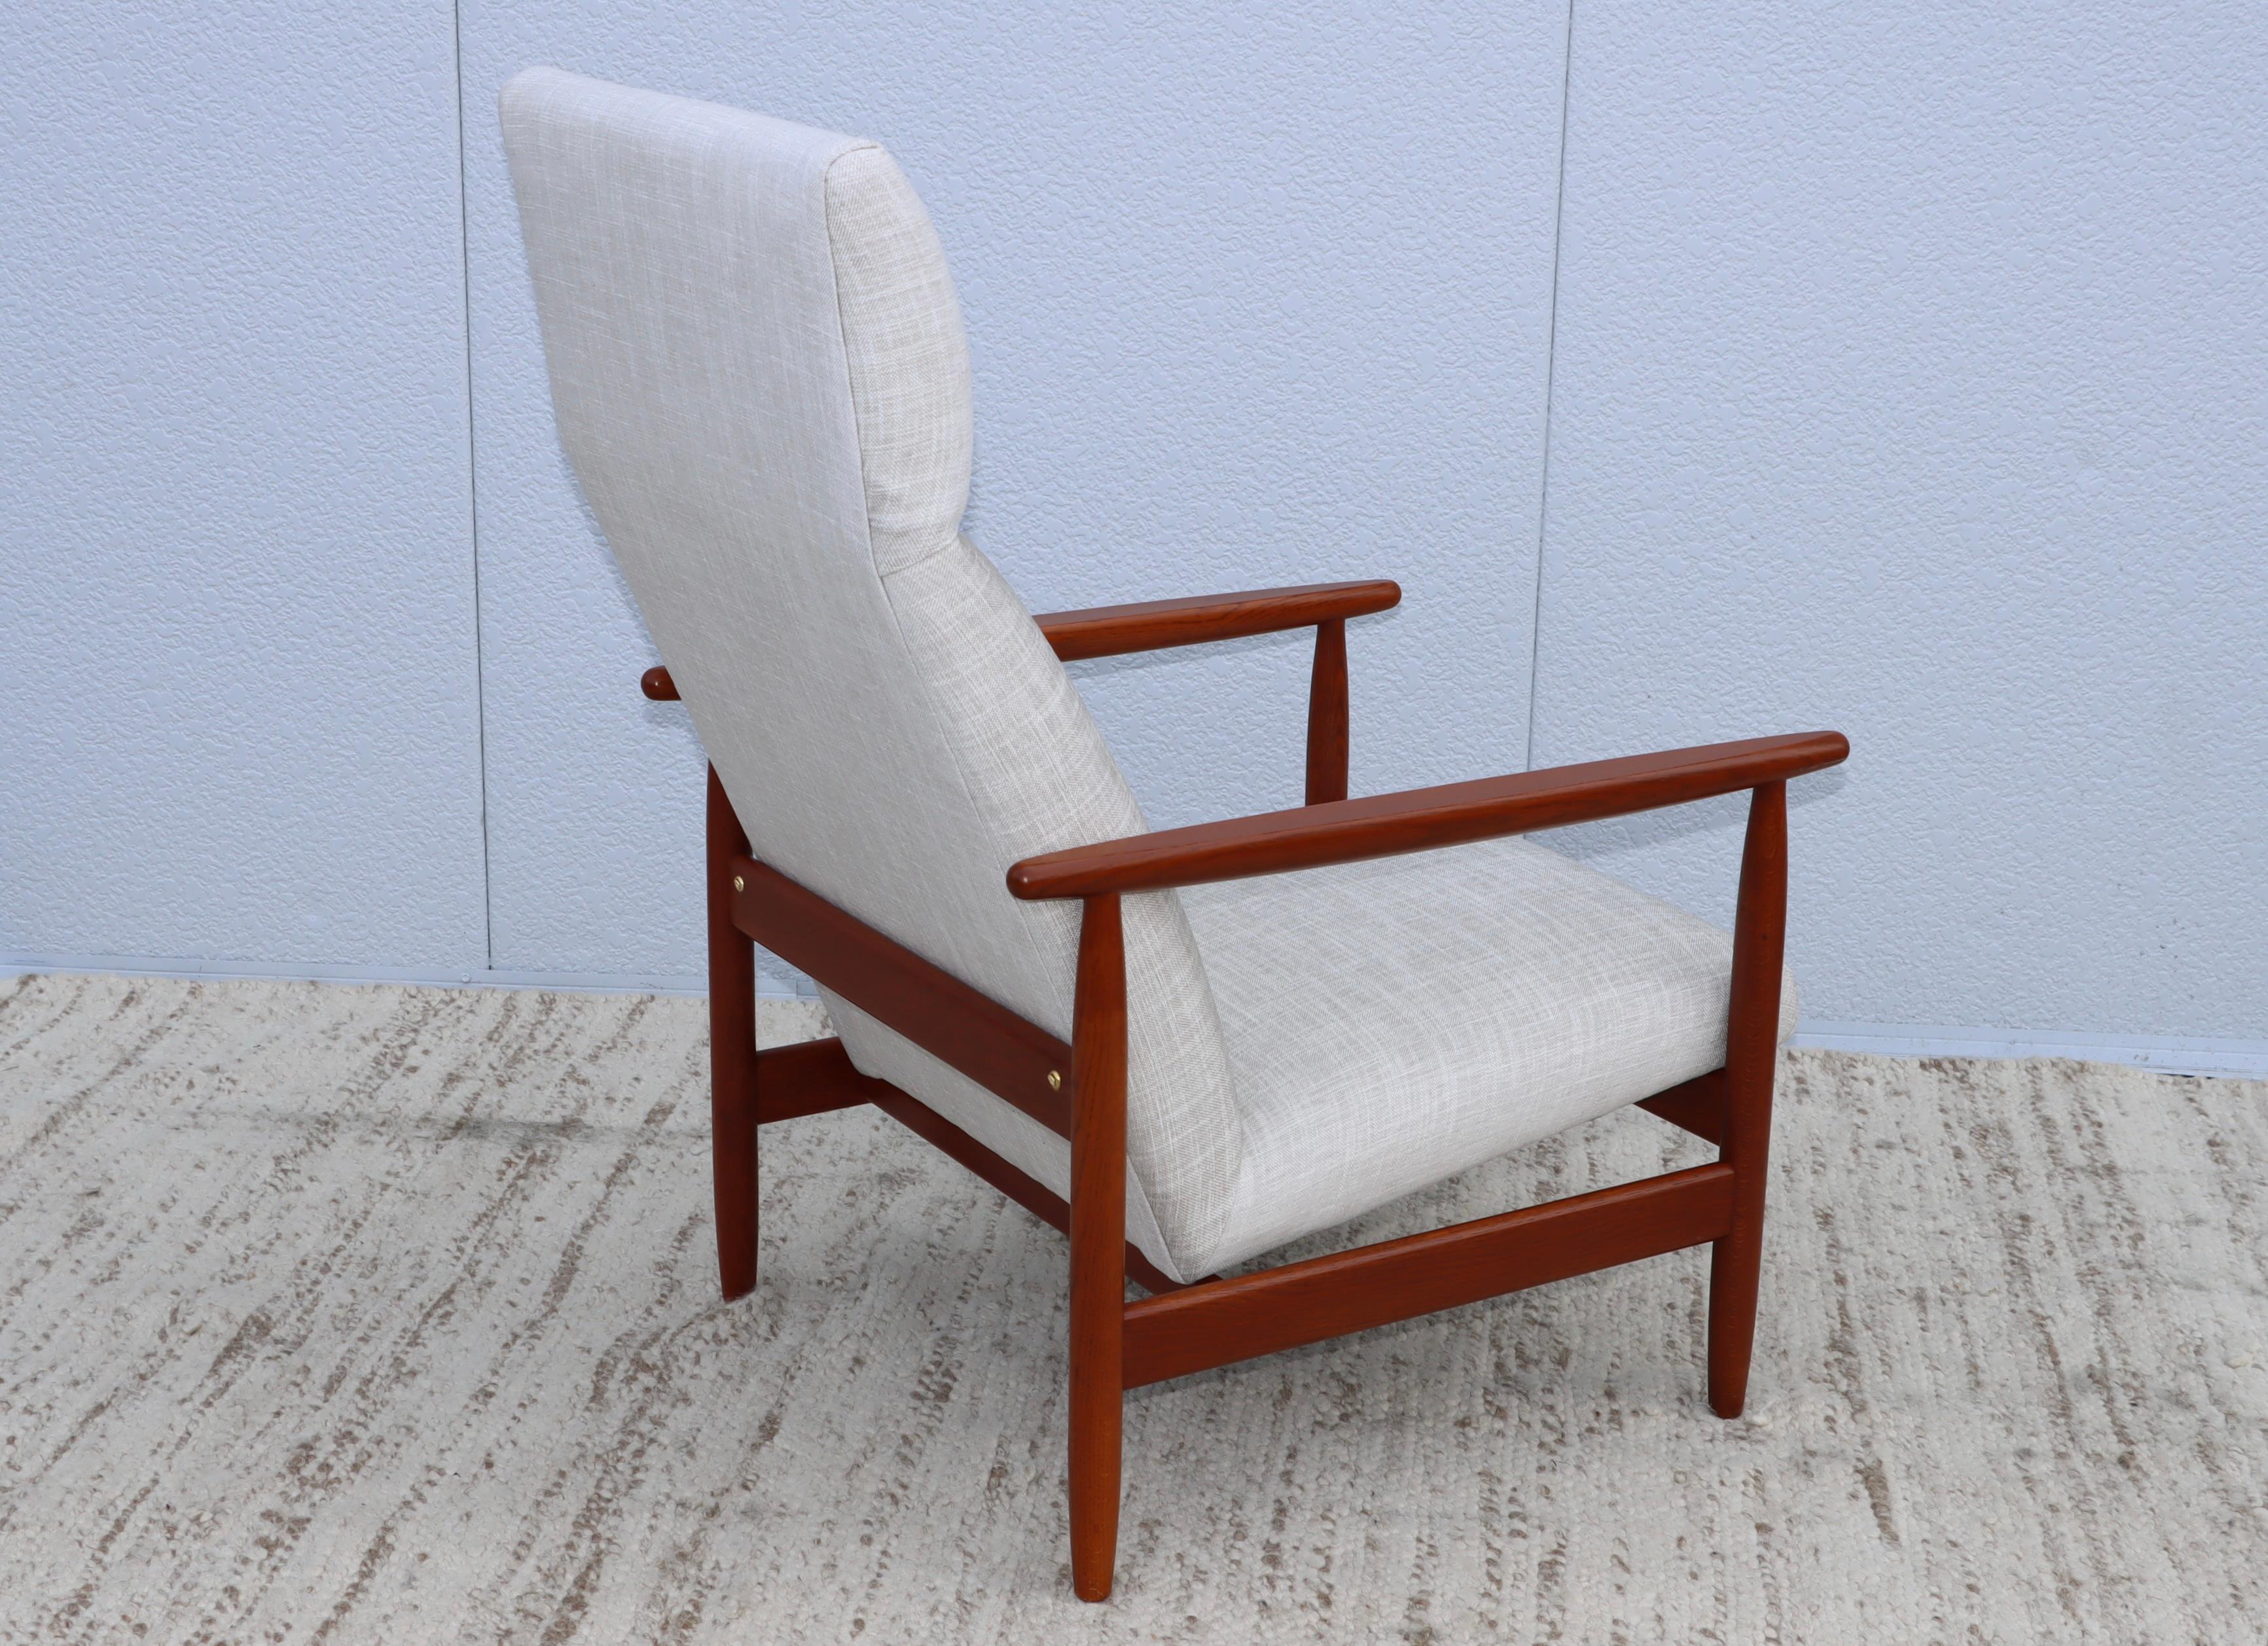 Superbe fauteuil à haut dossier en teck danois des années 1960 conçu par Ejvind A. Johanssen, en état vintage avec une usure mineure du teck, nouvellement retapissé en tissu Donghia.